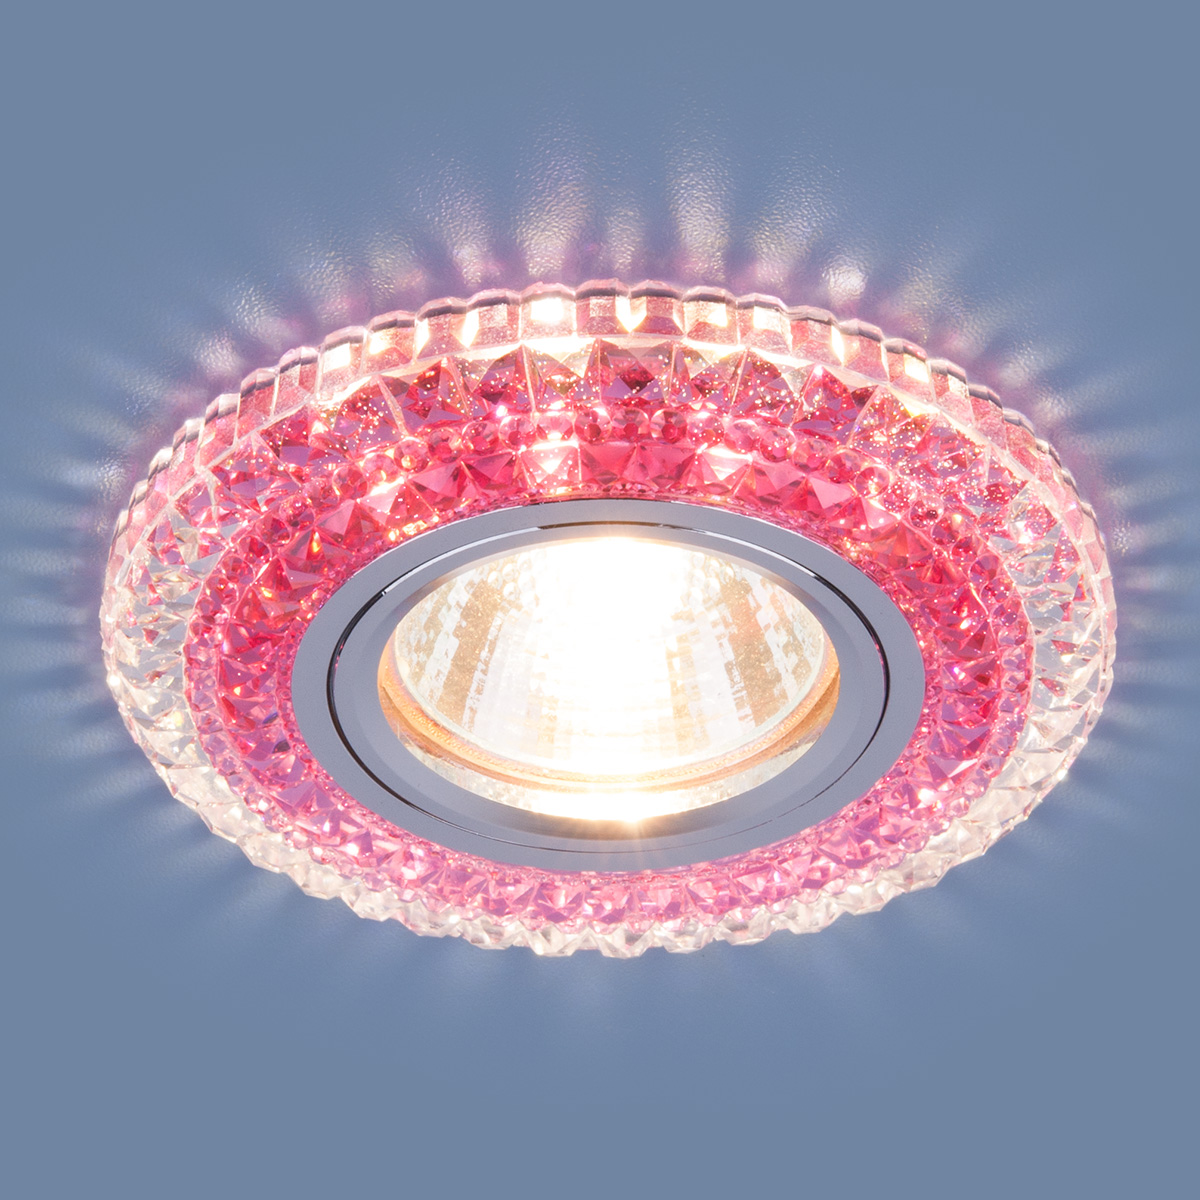 Точечный светодиодный светильник 2193 MR16 CL/PK прозрачный/розовый